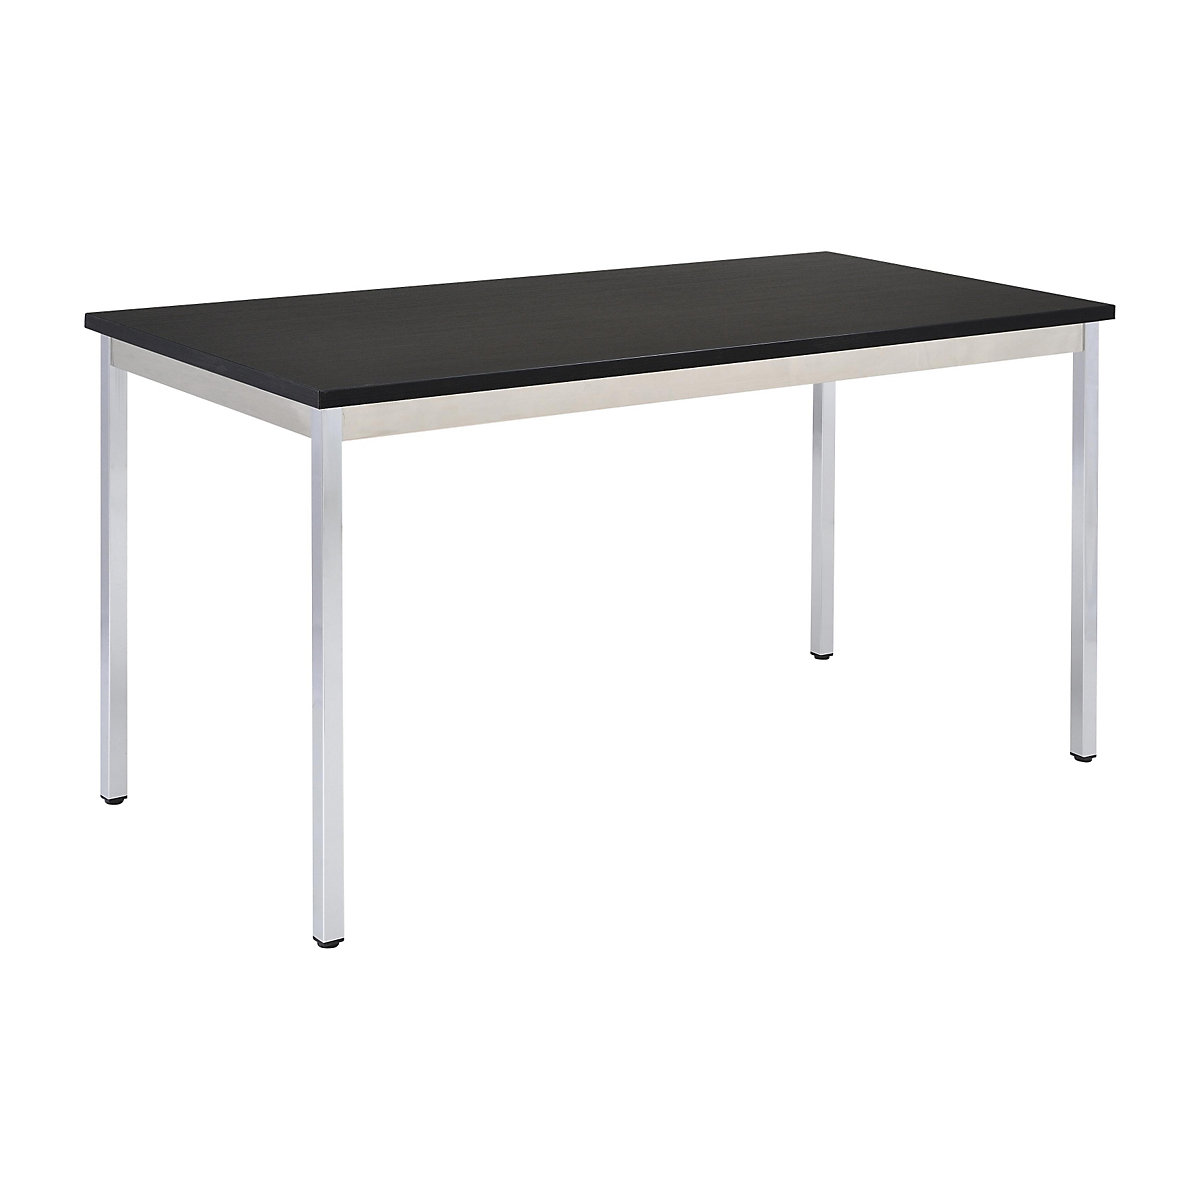 Table polyvalente – eurokraft basic, rectangulaire, h x l x p 740 x 700 x 600 mm, plateau noir, piétement chromé-15